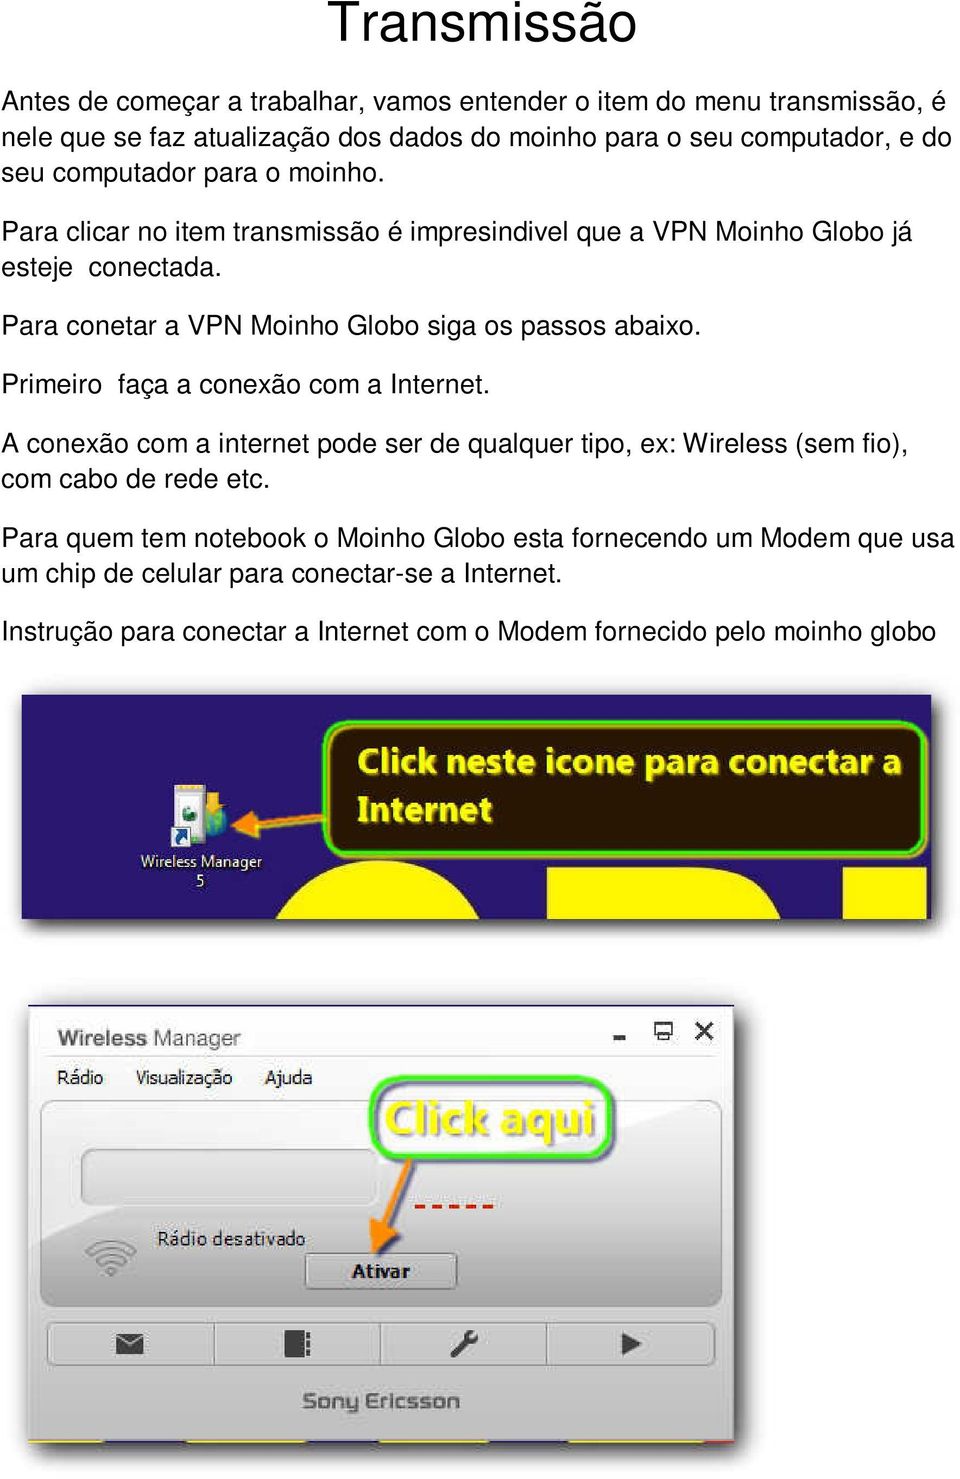 Para conetar a VPN Moinho Globo siga os passos abaixo. Primeiro faça a conexão com a Internet.